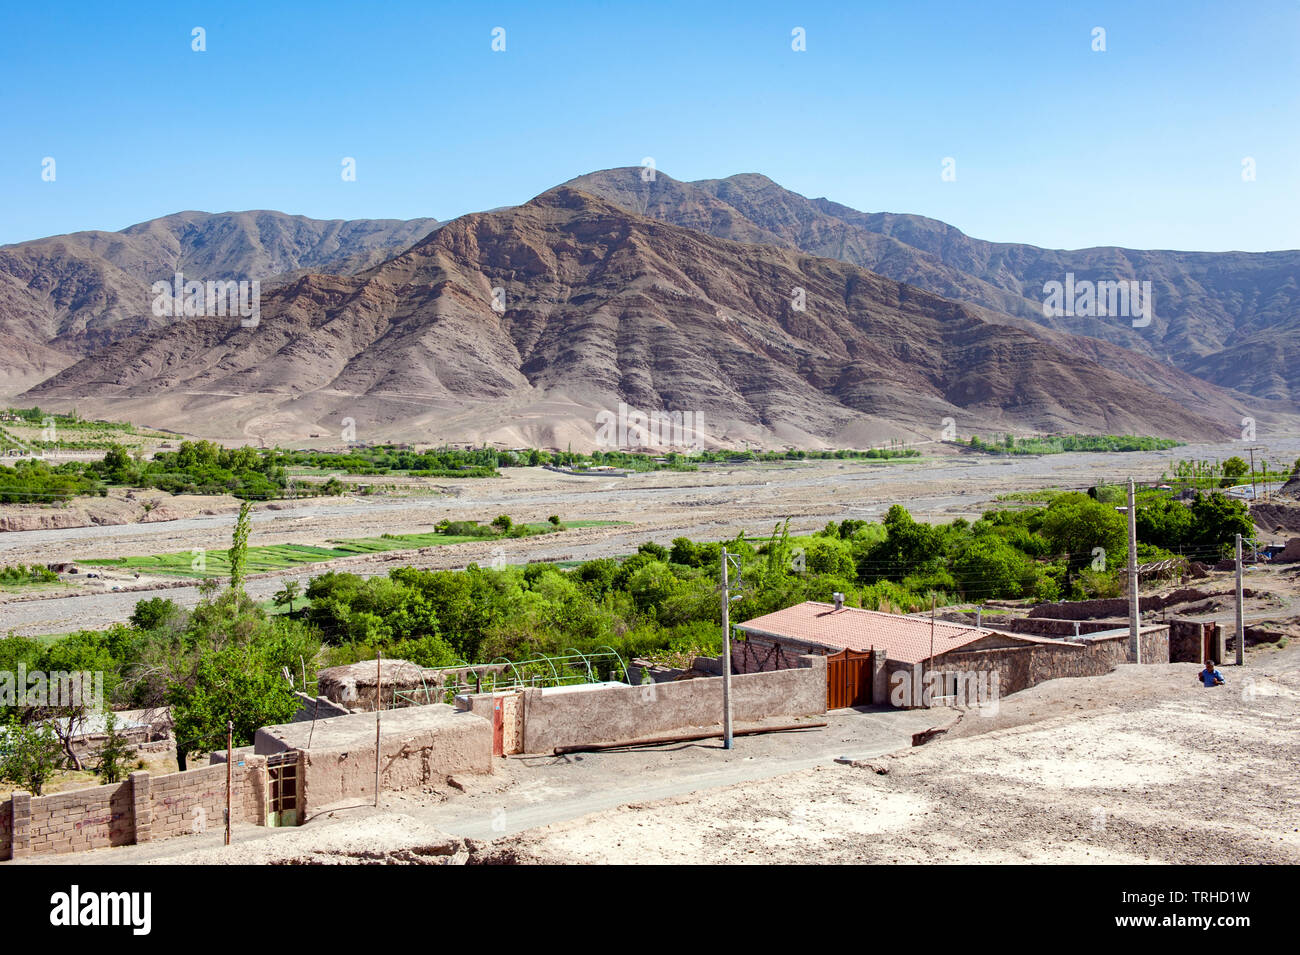 Un villaggio vicino al bottino deserto in Iran. Foto Stock